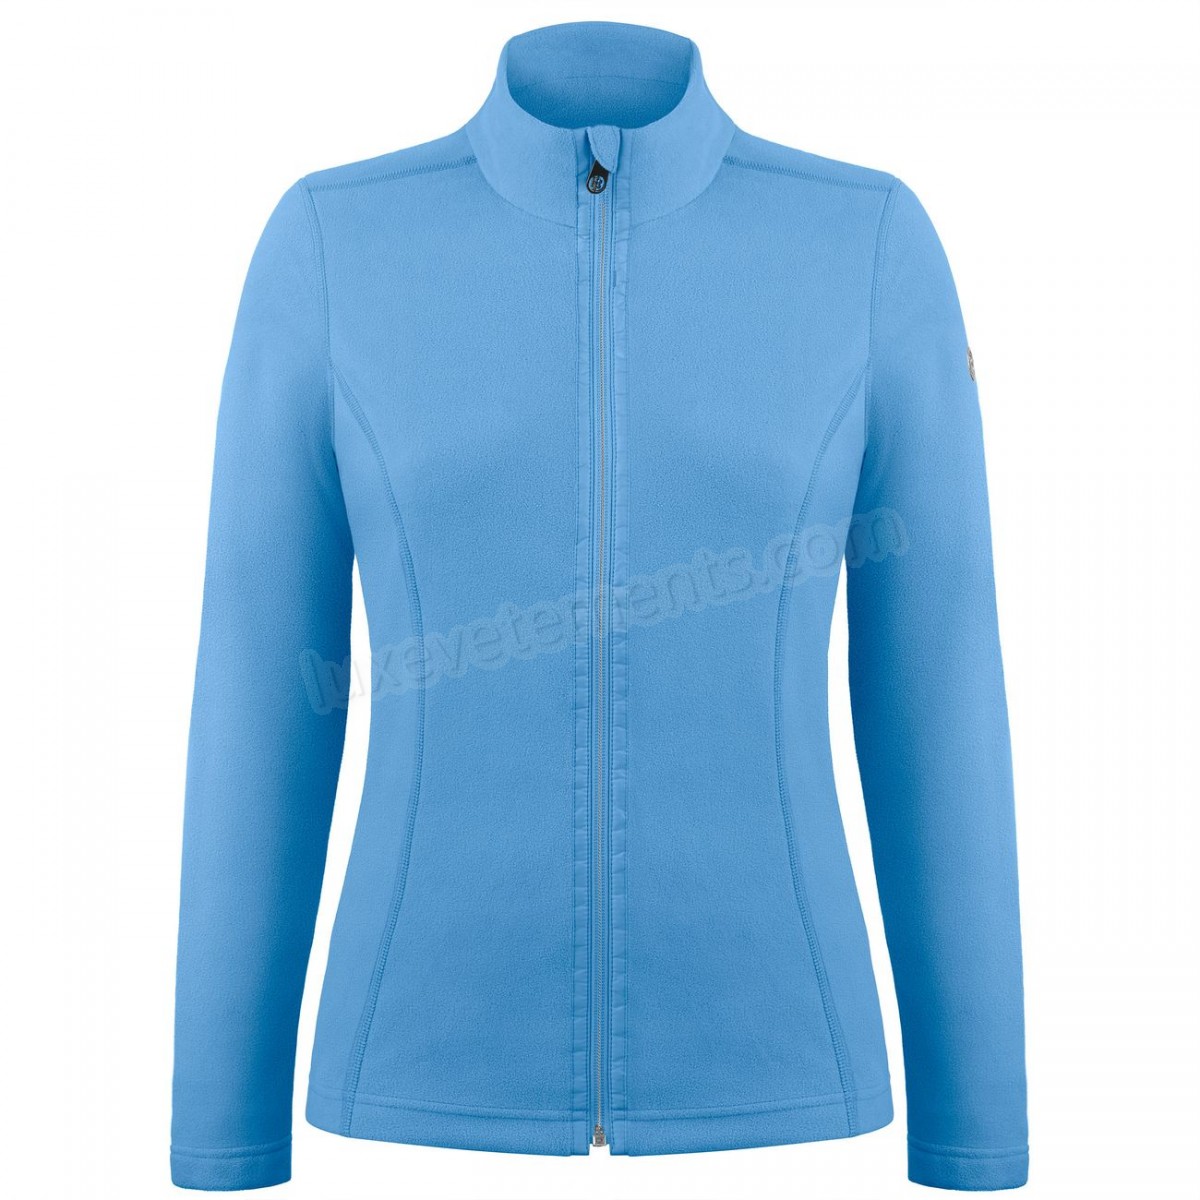 Poivre Blanc-Sports d'hiver femme POIVRE BLANC Veste Polaire Poivre Blanc Fleece Jacket 1500 Polar Blue Femme Vente en ligne - -1